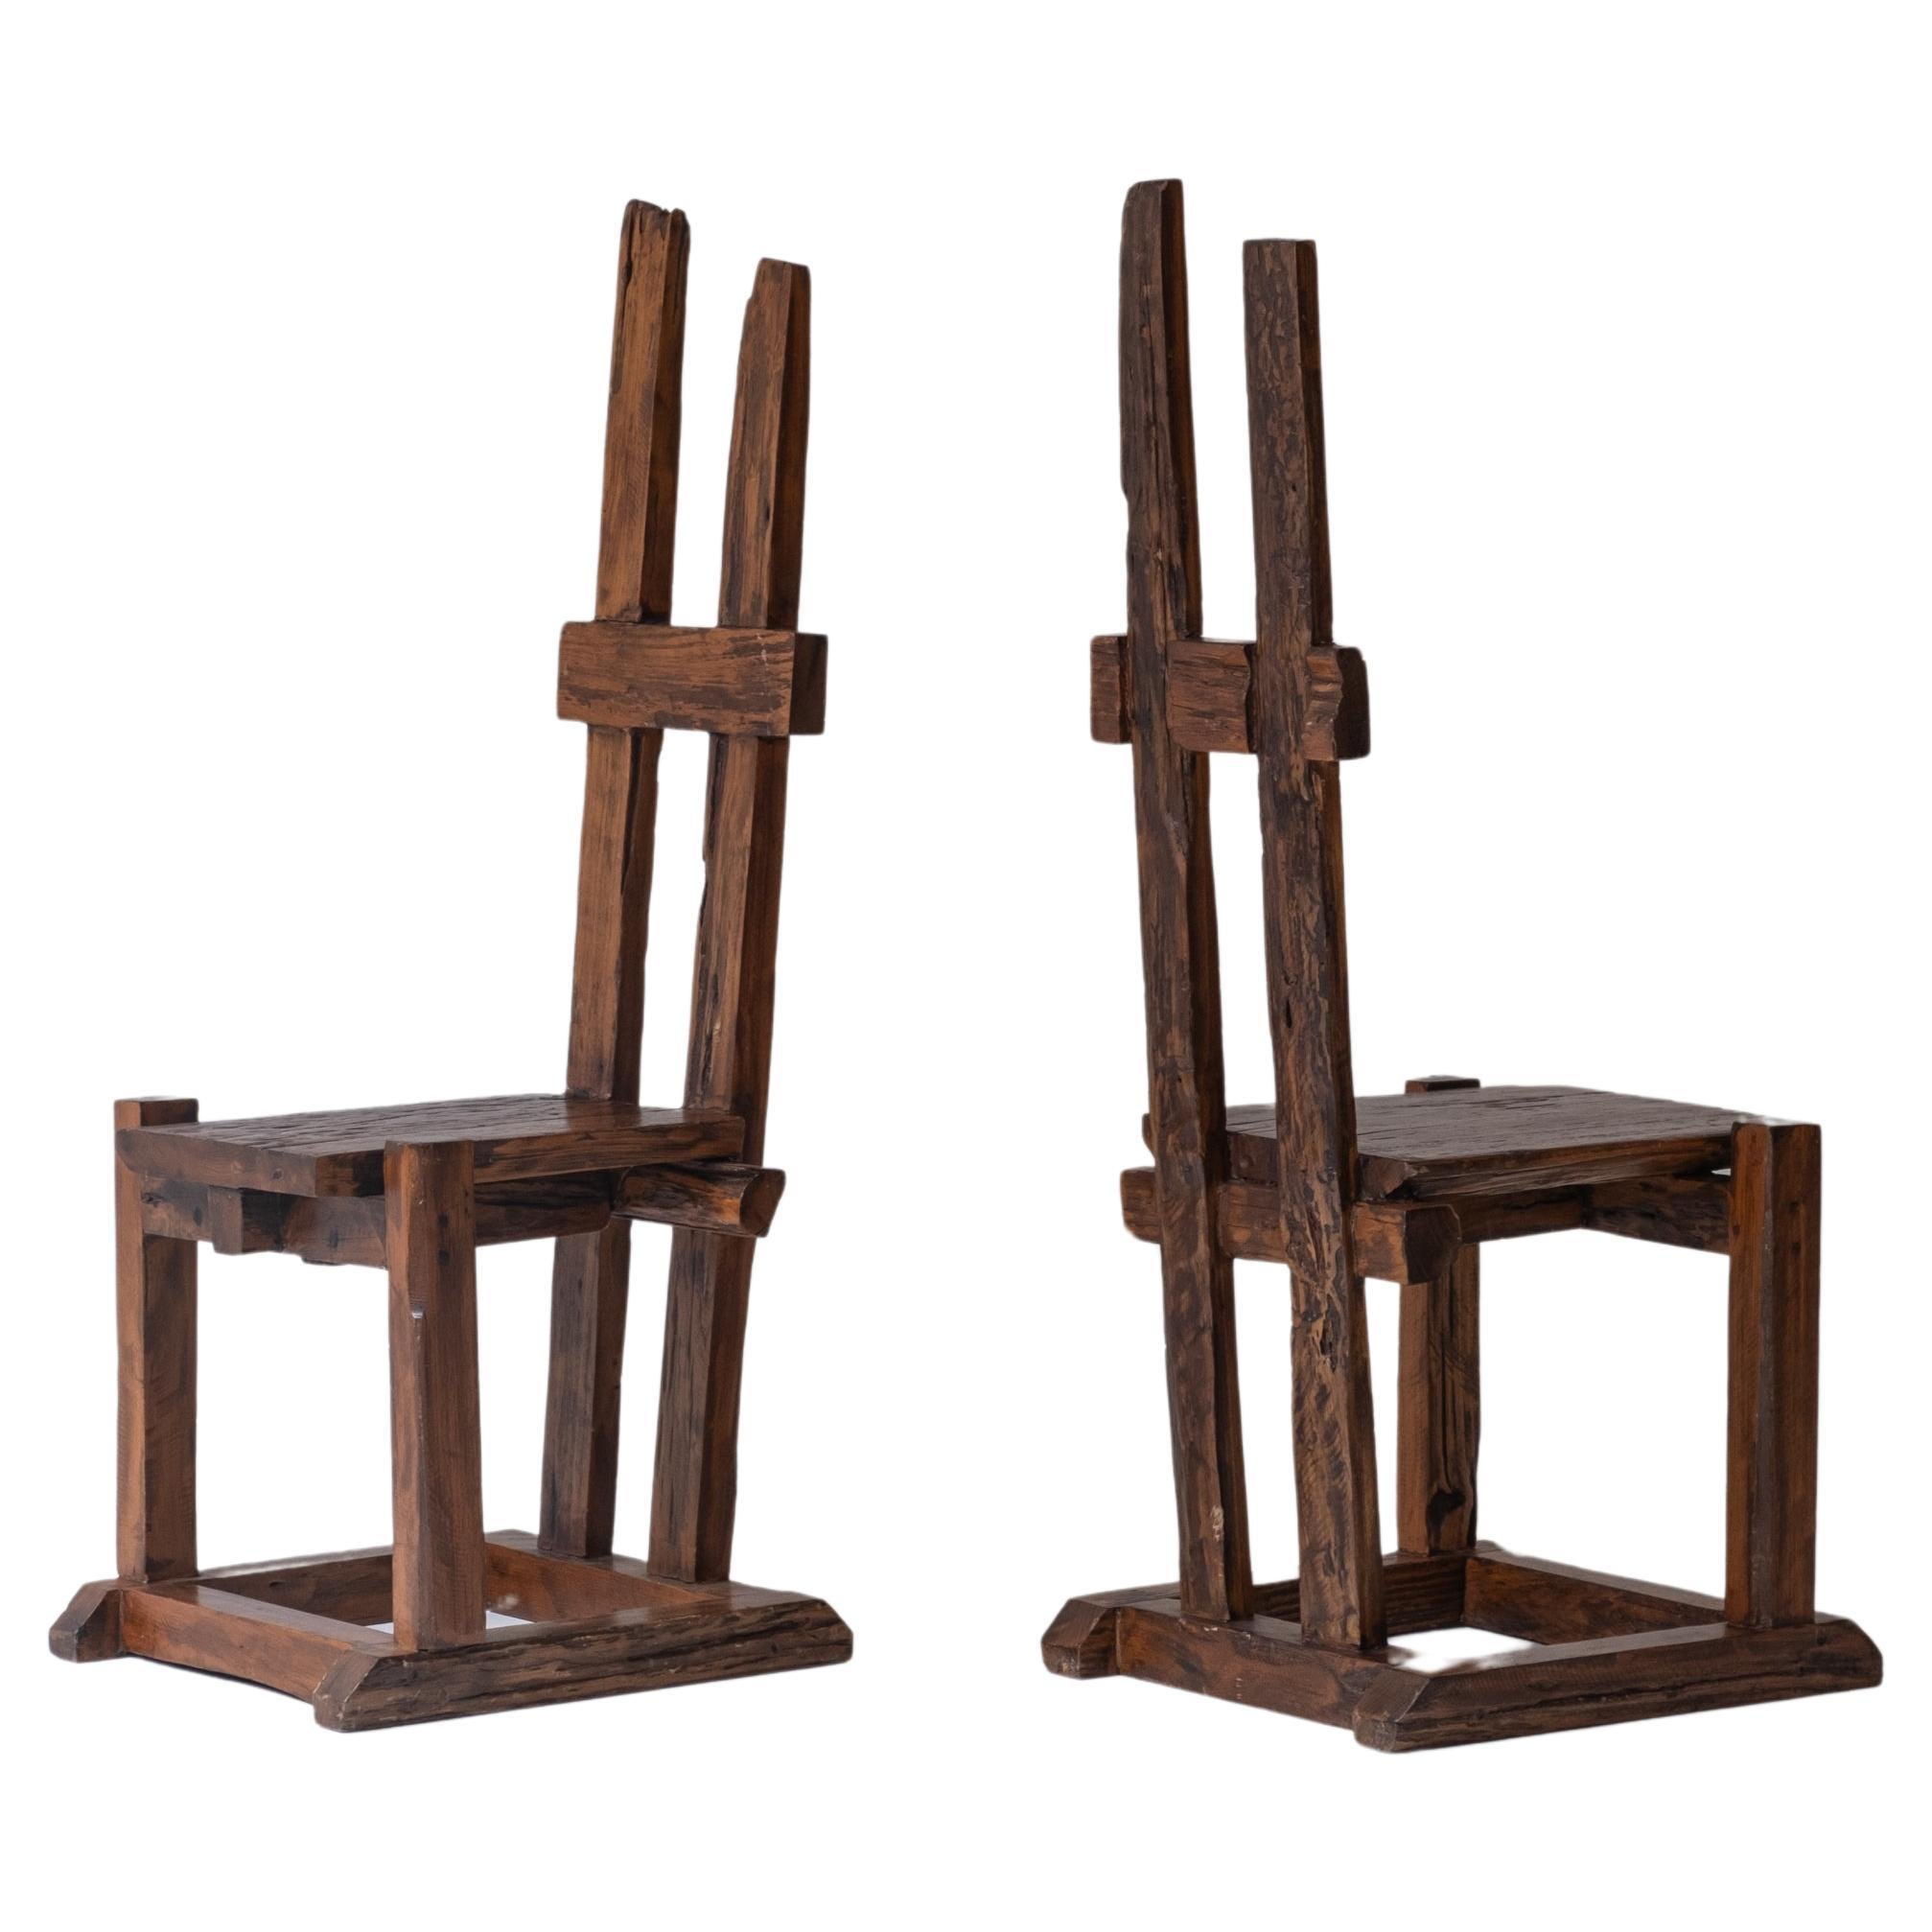 Ein Satz primitiver Stühle mit hoher Rückenlehne, entworfen und hergestellt in den 1950er Jahren